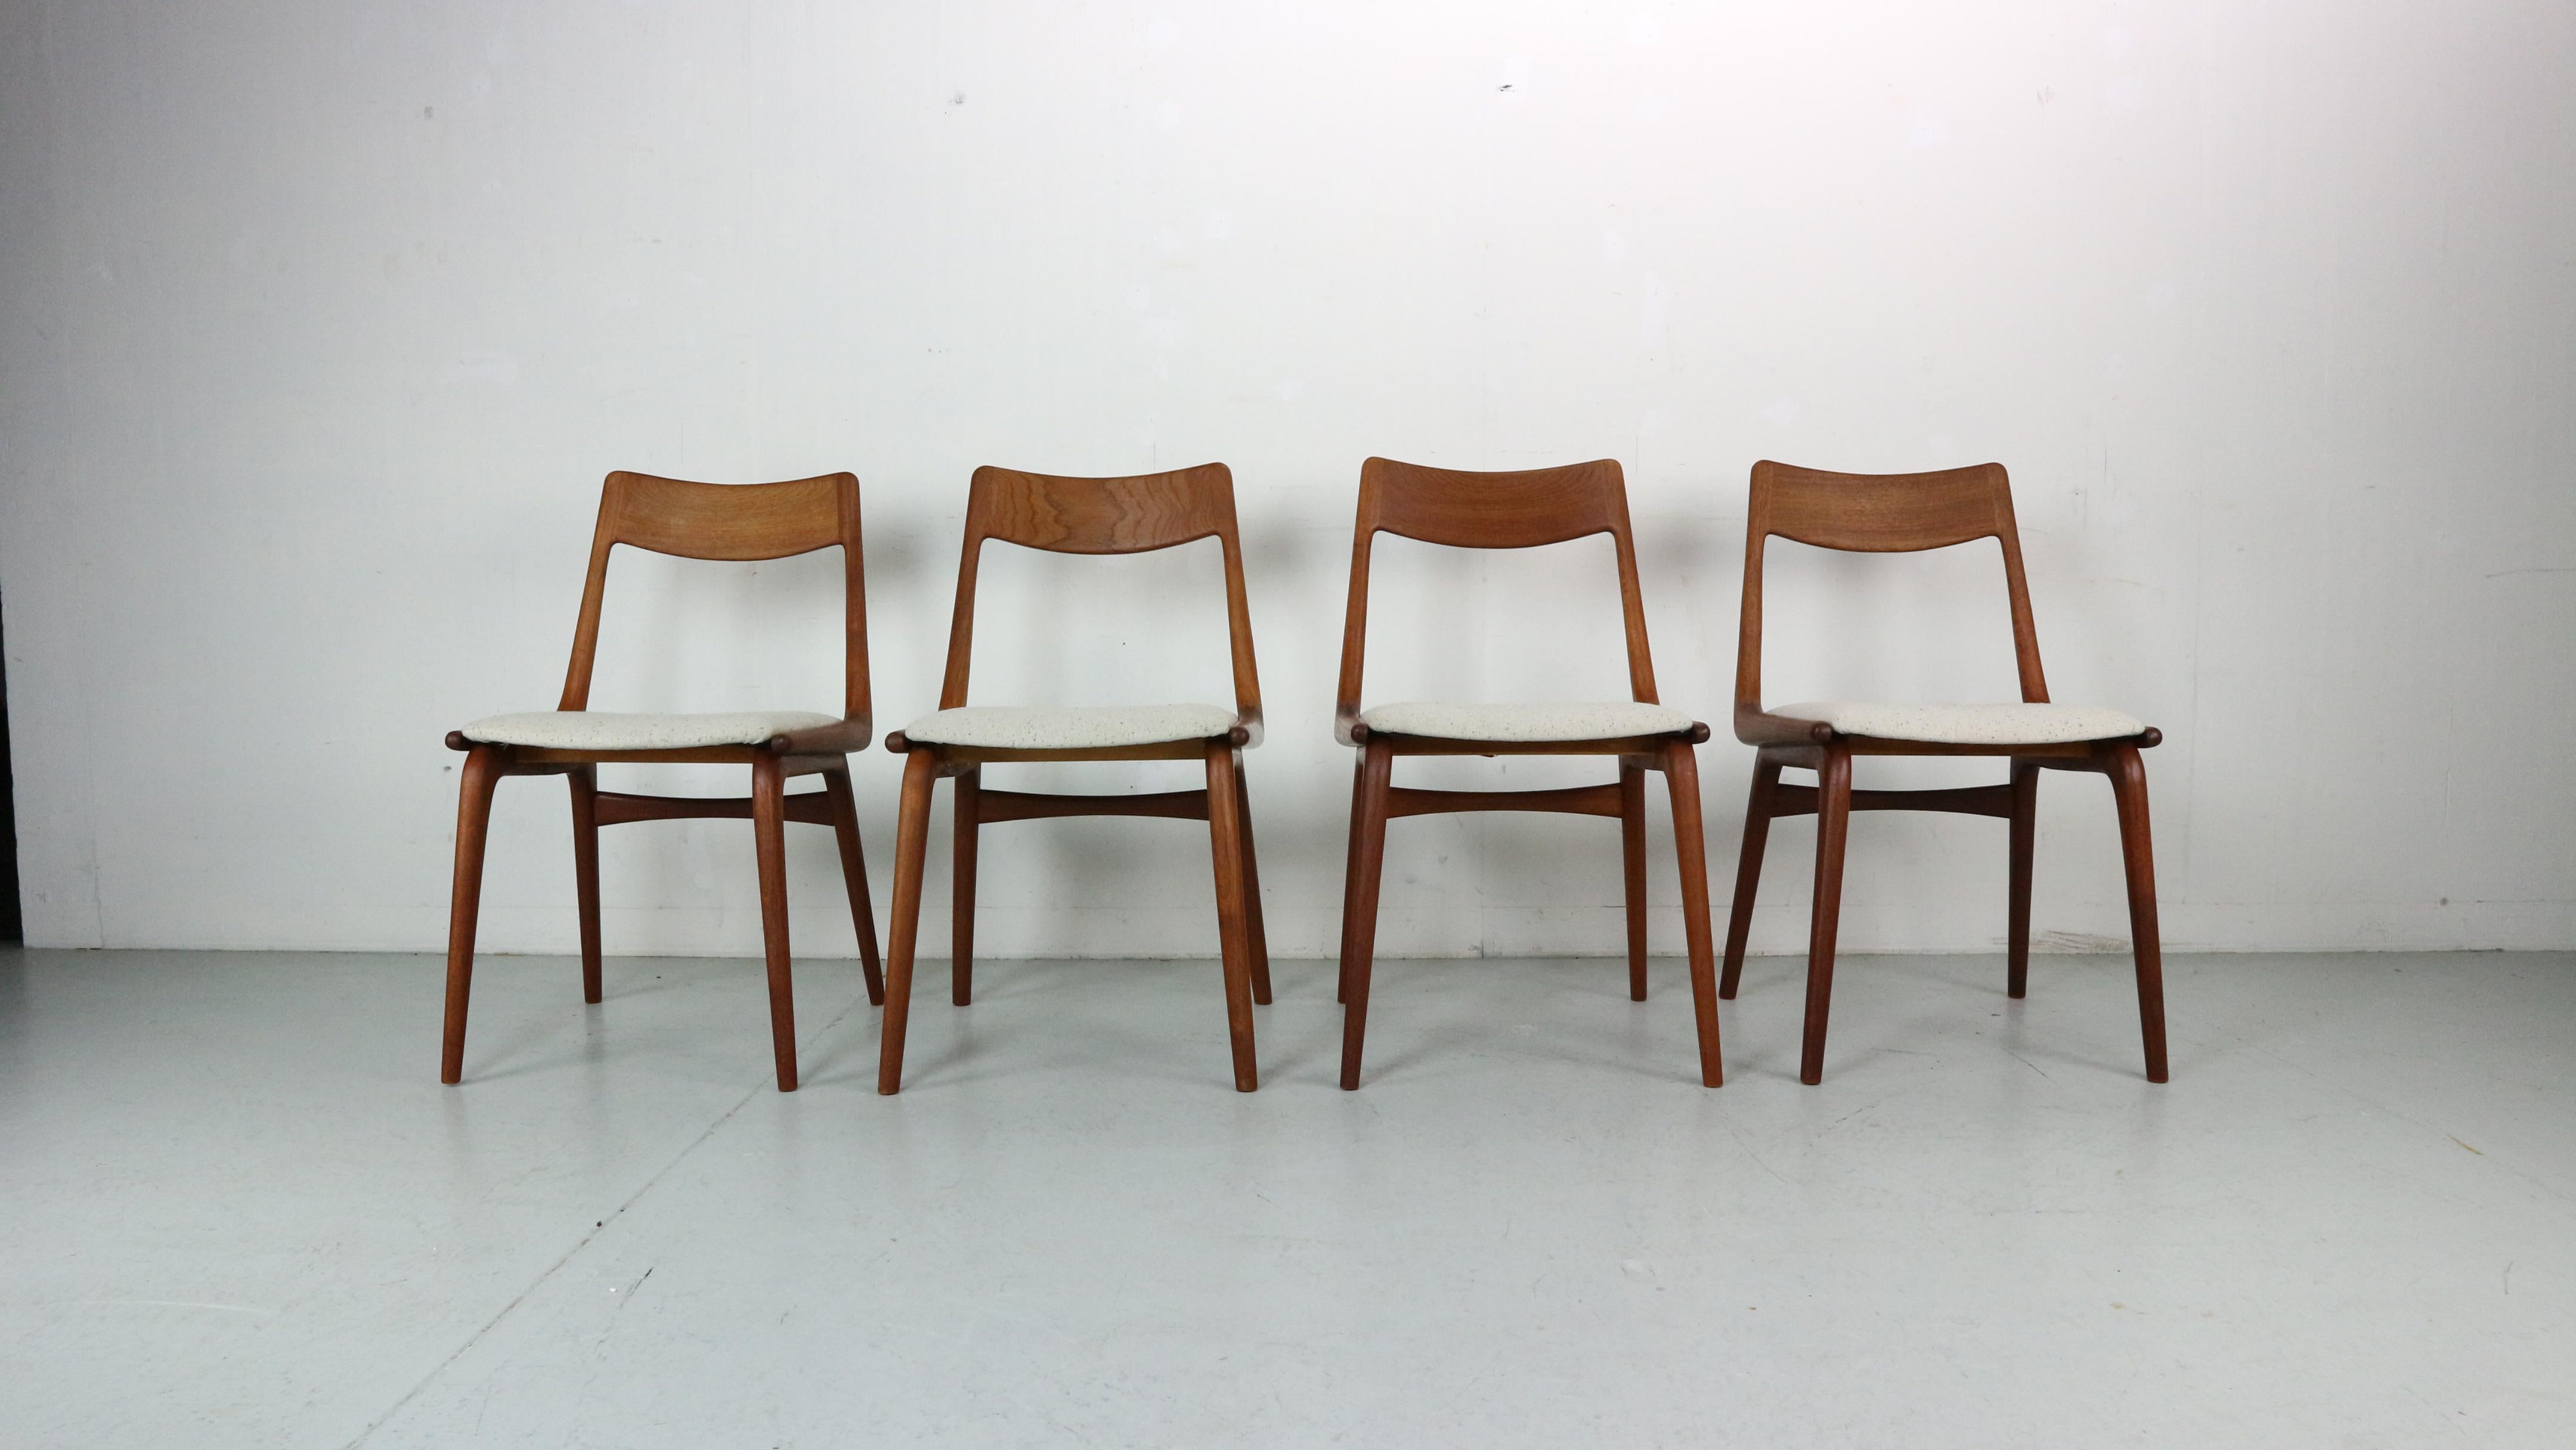 Elegantes Set dänischer Esszimmerstühle mit einem Gestell aus Teakholz. Von der Seite gesehen hat der Rahmen des Sitzes, der in die Rückenlehne übergeht, die Form eines Bumerangs, daher auch der Spitzname des Modells. Diese Form wird an den Beinen